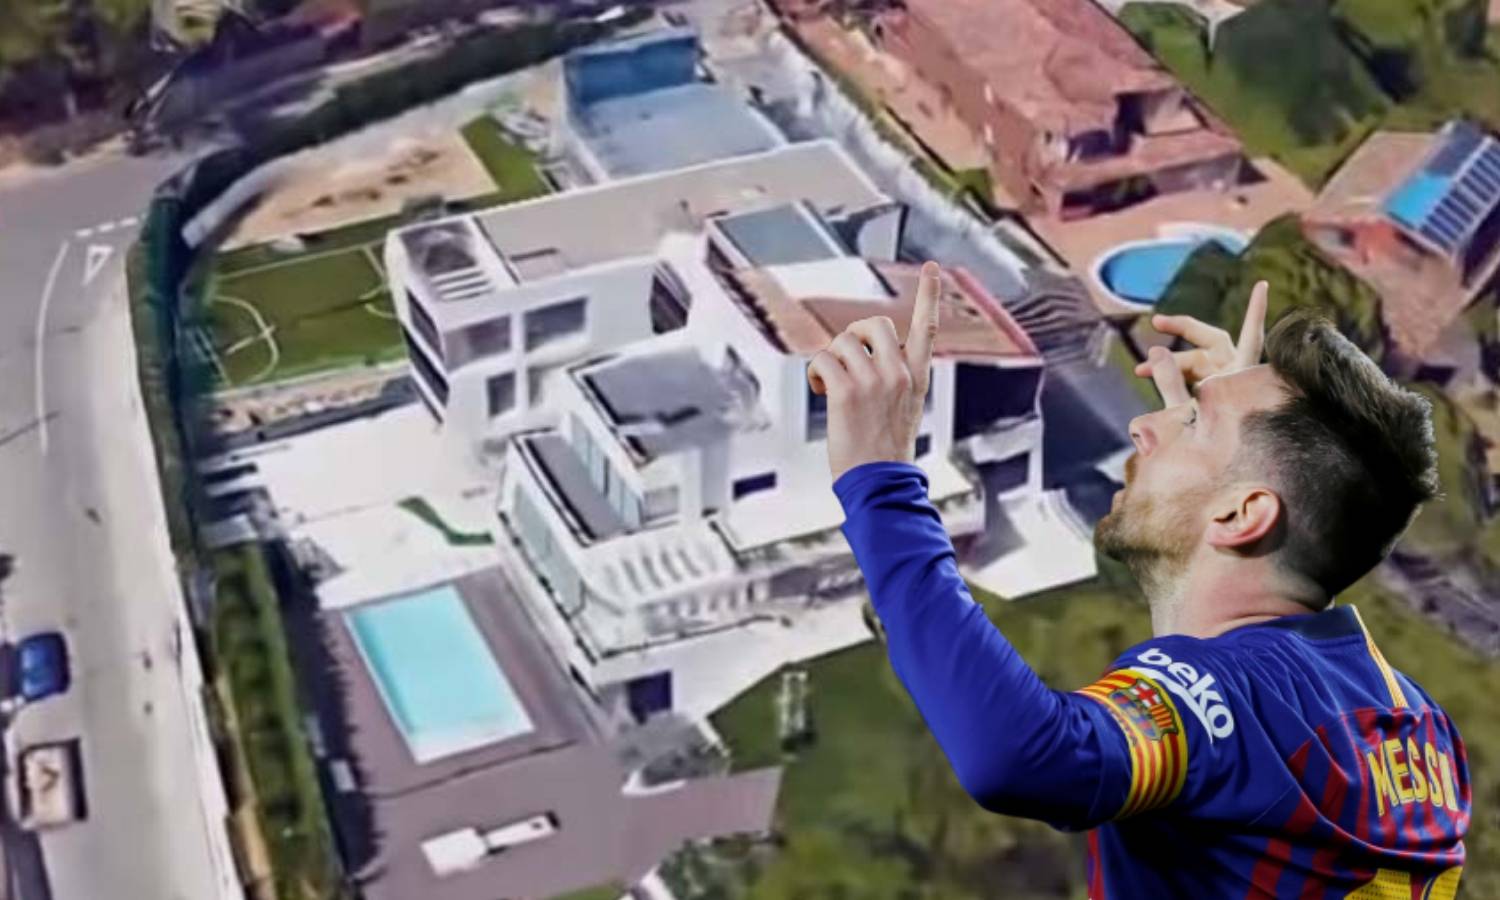 Messi City: Kupio sve susjedne kuće, preusmjerio je i avione...